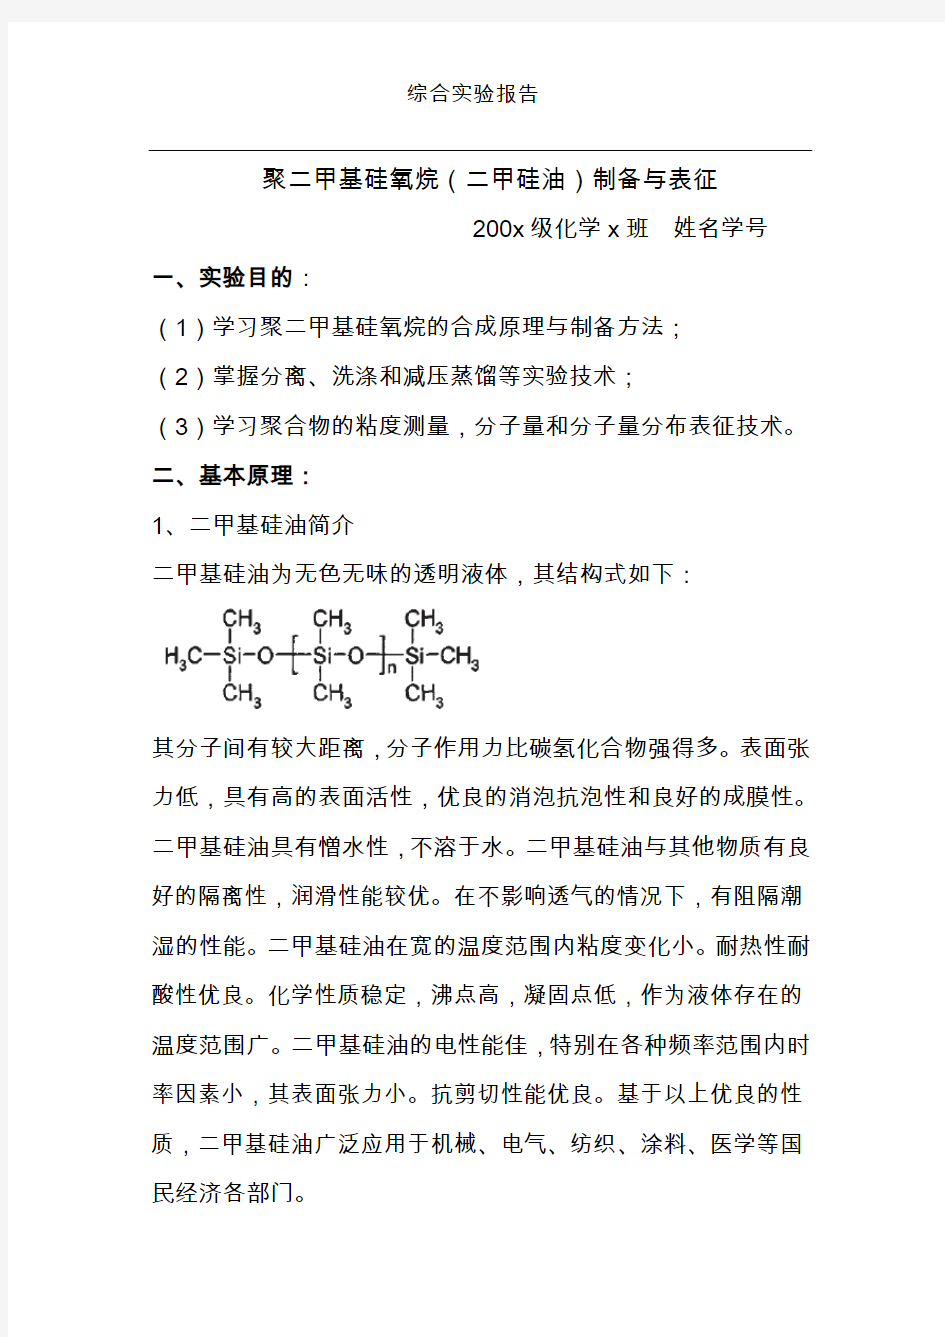 朱庆增老师高分子综合实验报告